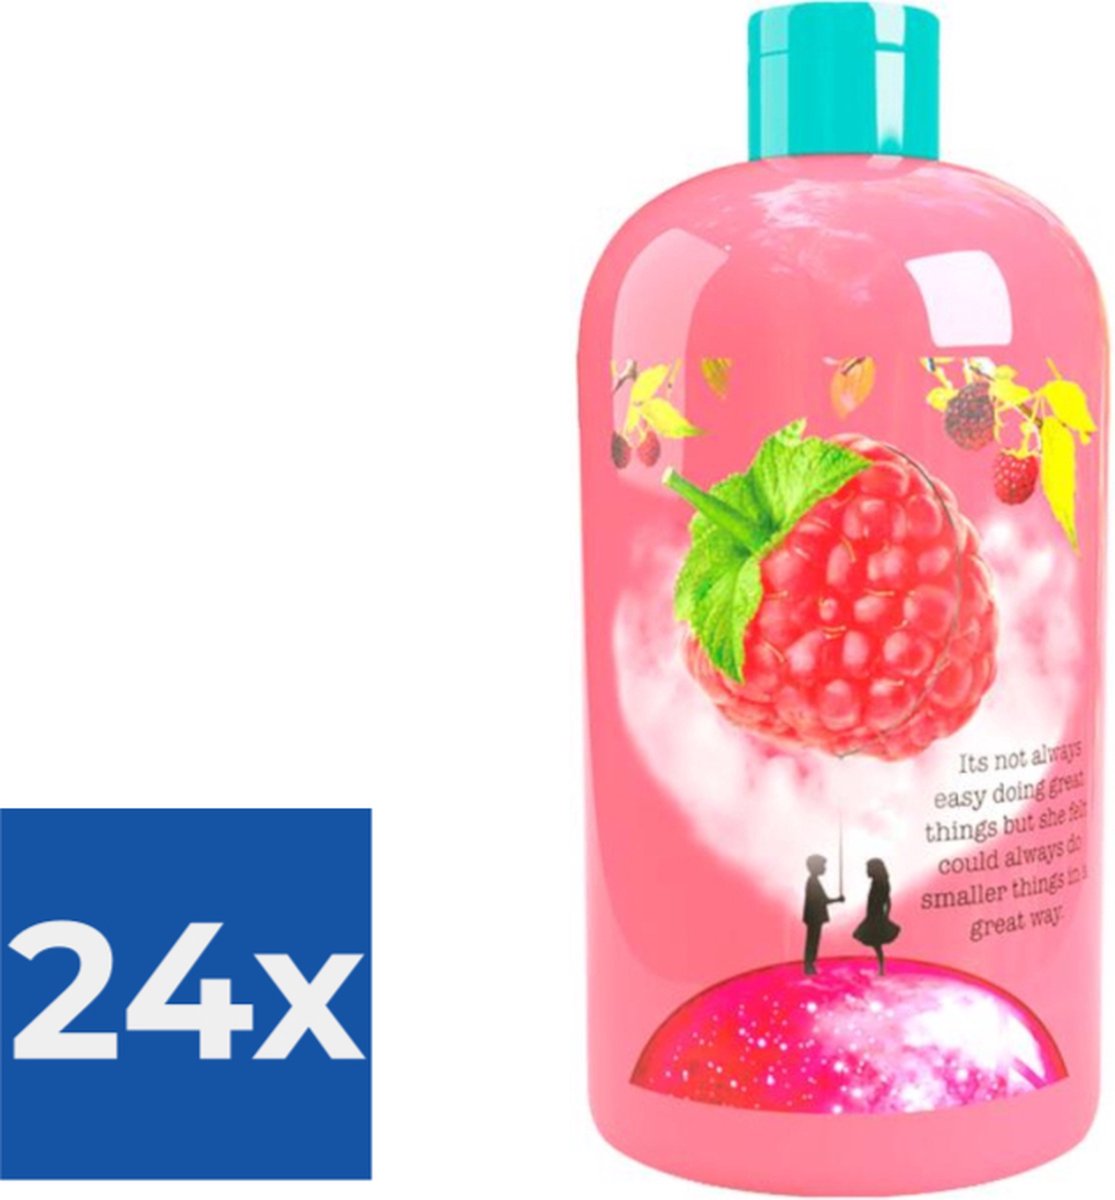 Treaclemoon The raspberry kiss bad en douchgel 500ML - Voordeelverpakking 24 stuks